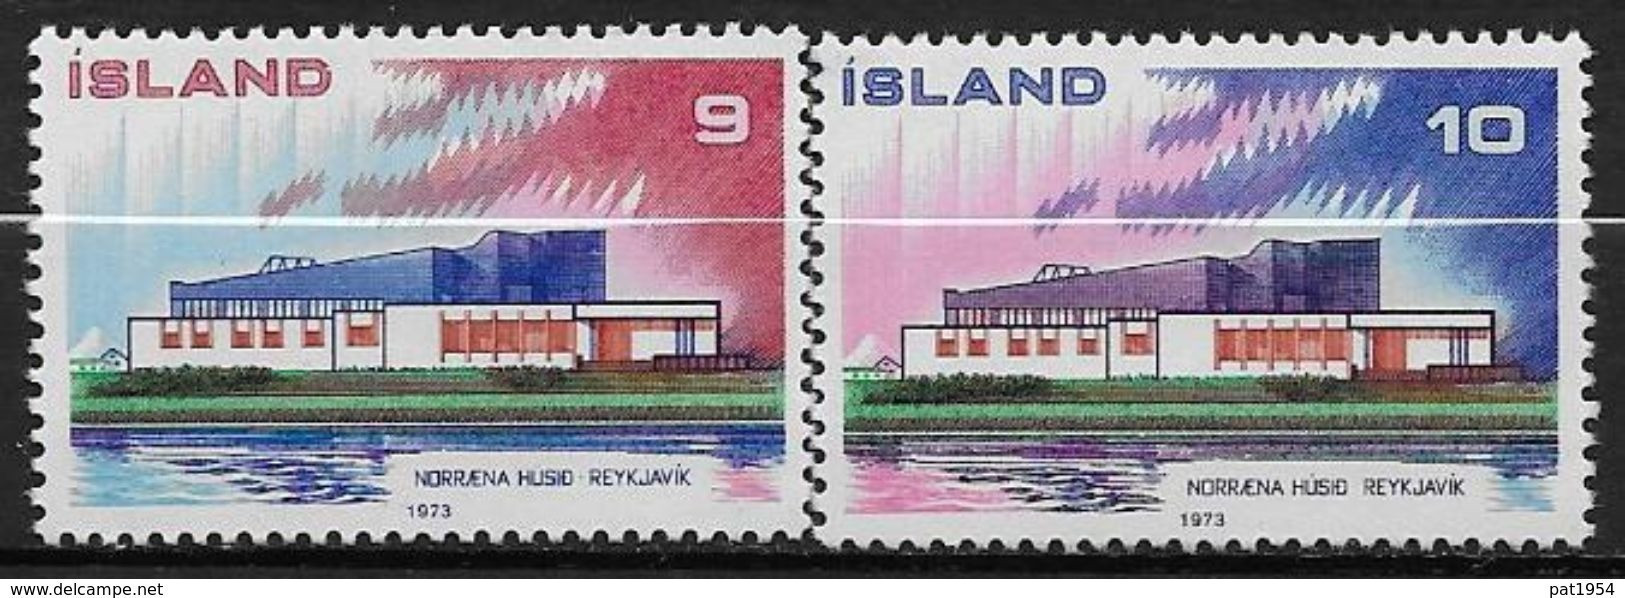 Islande 1973 N° 431/432  Neufs ** MNH émission Pays Nordiques, Norden - Neufs